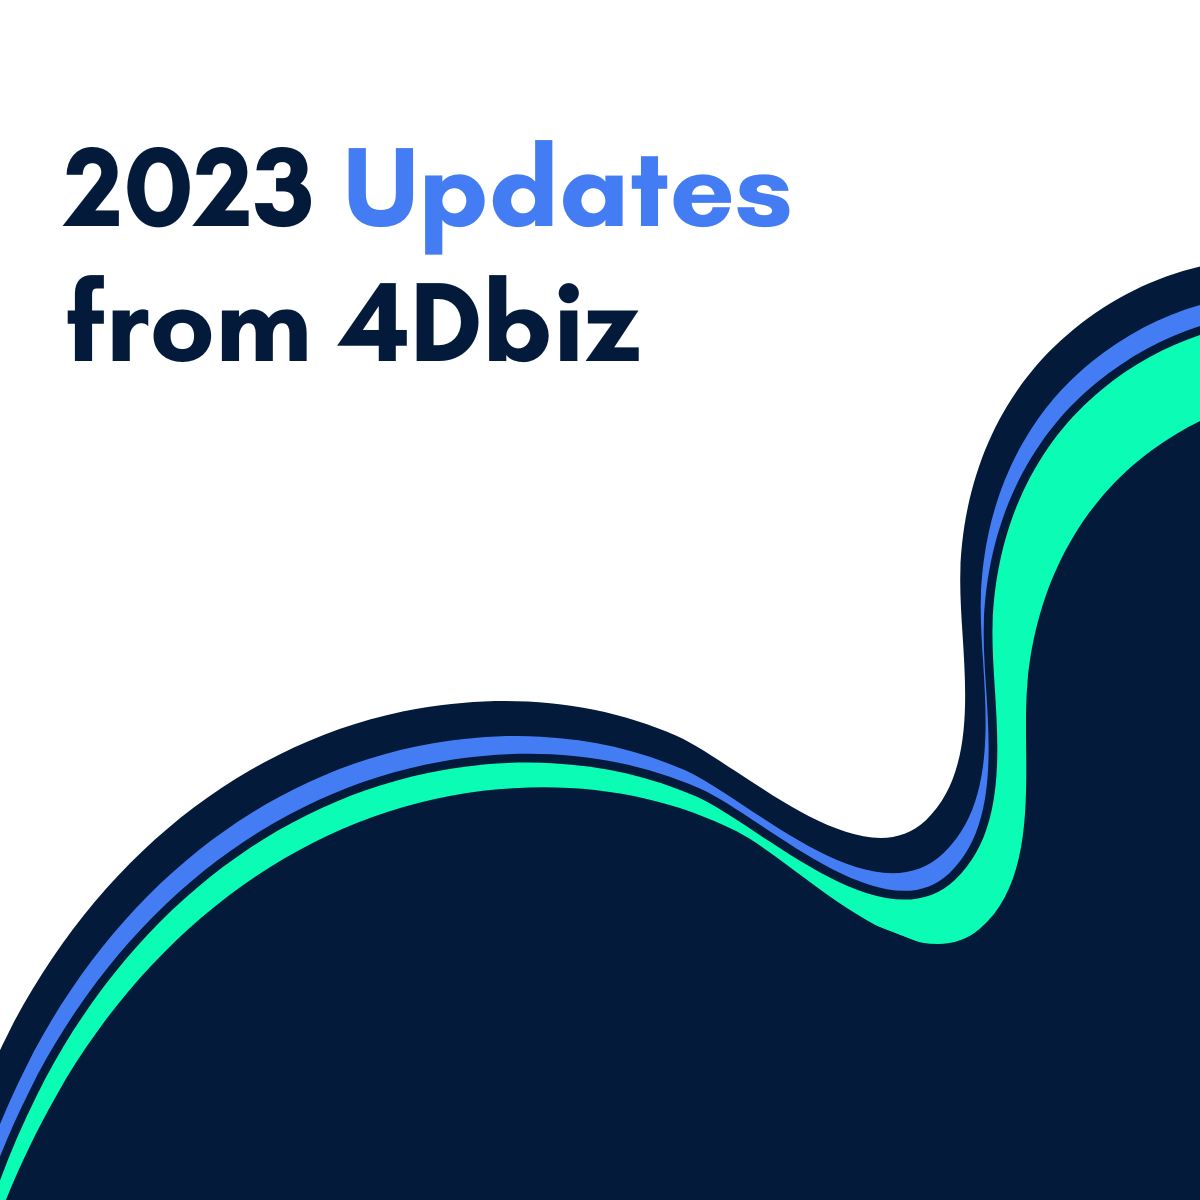 2023 Updates